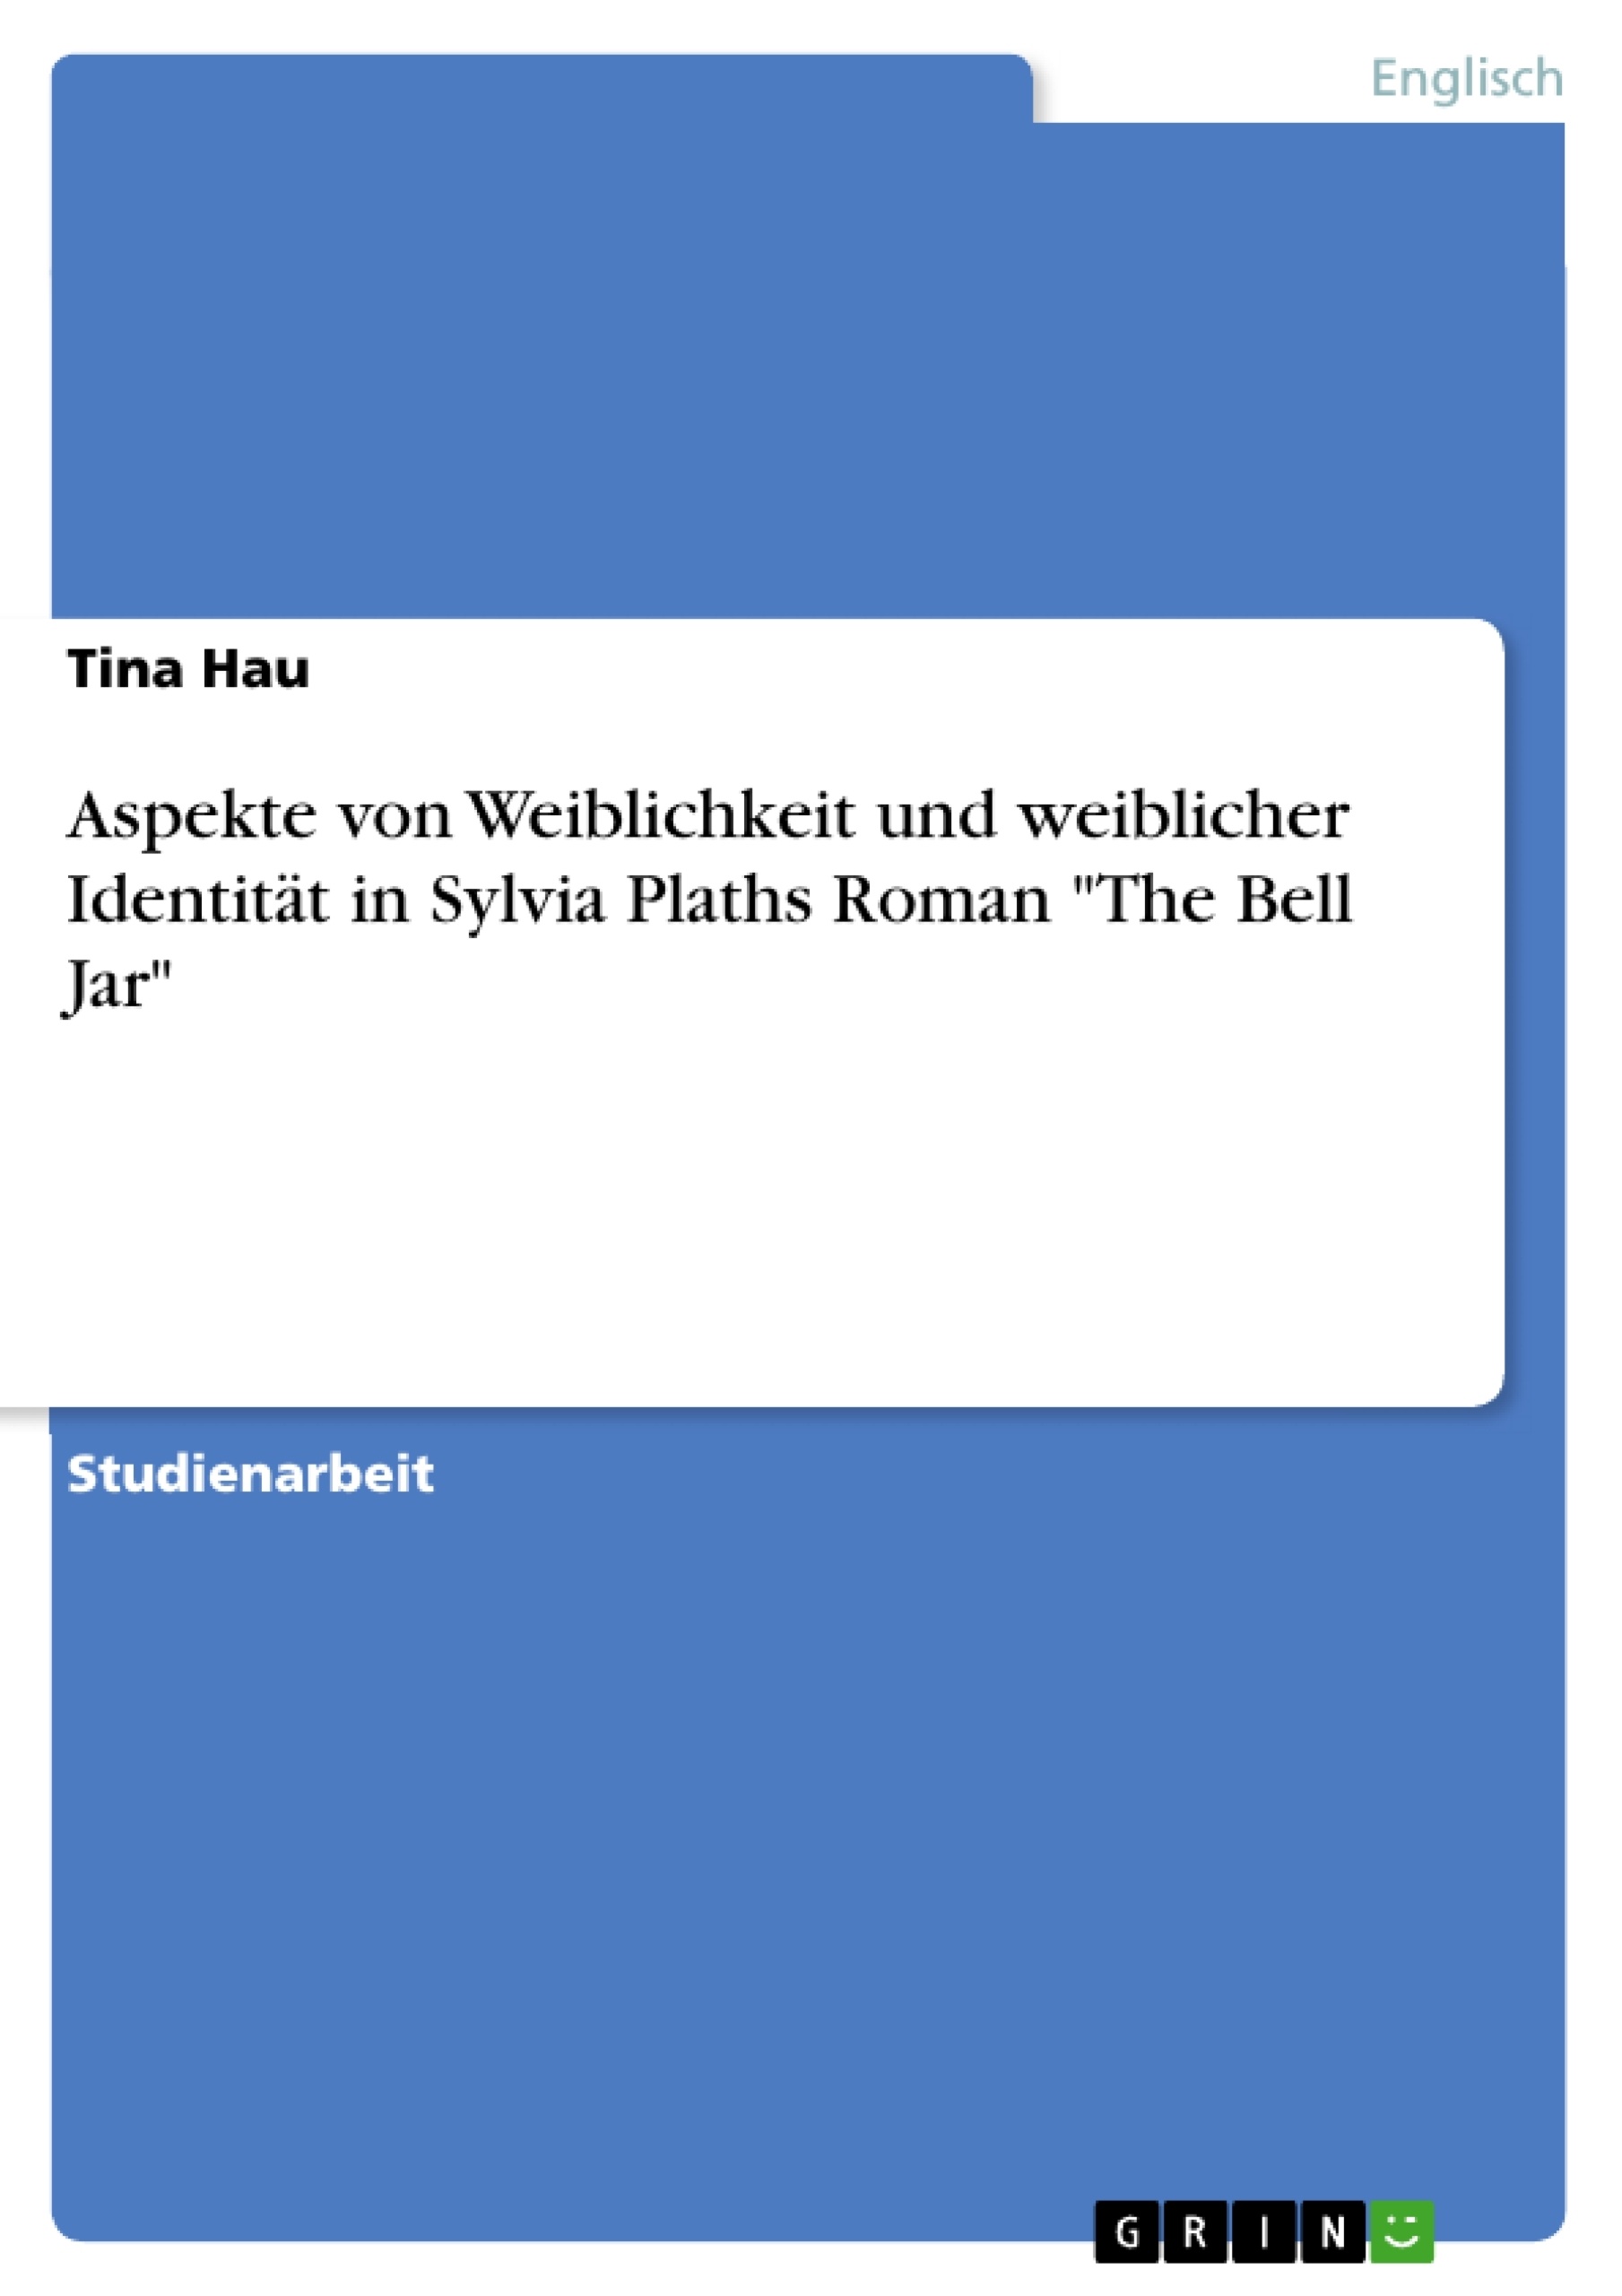 Título: Aspekte von Weiblichkeit und weiblicher Identität in Sylvia Plaths Roman "The Bell Jar"